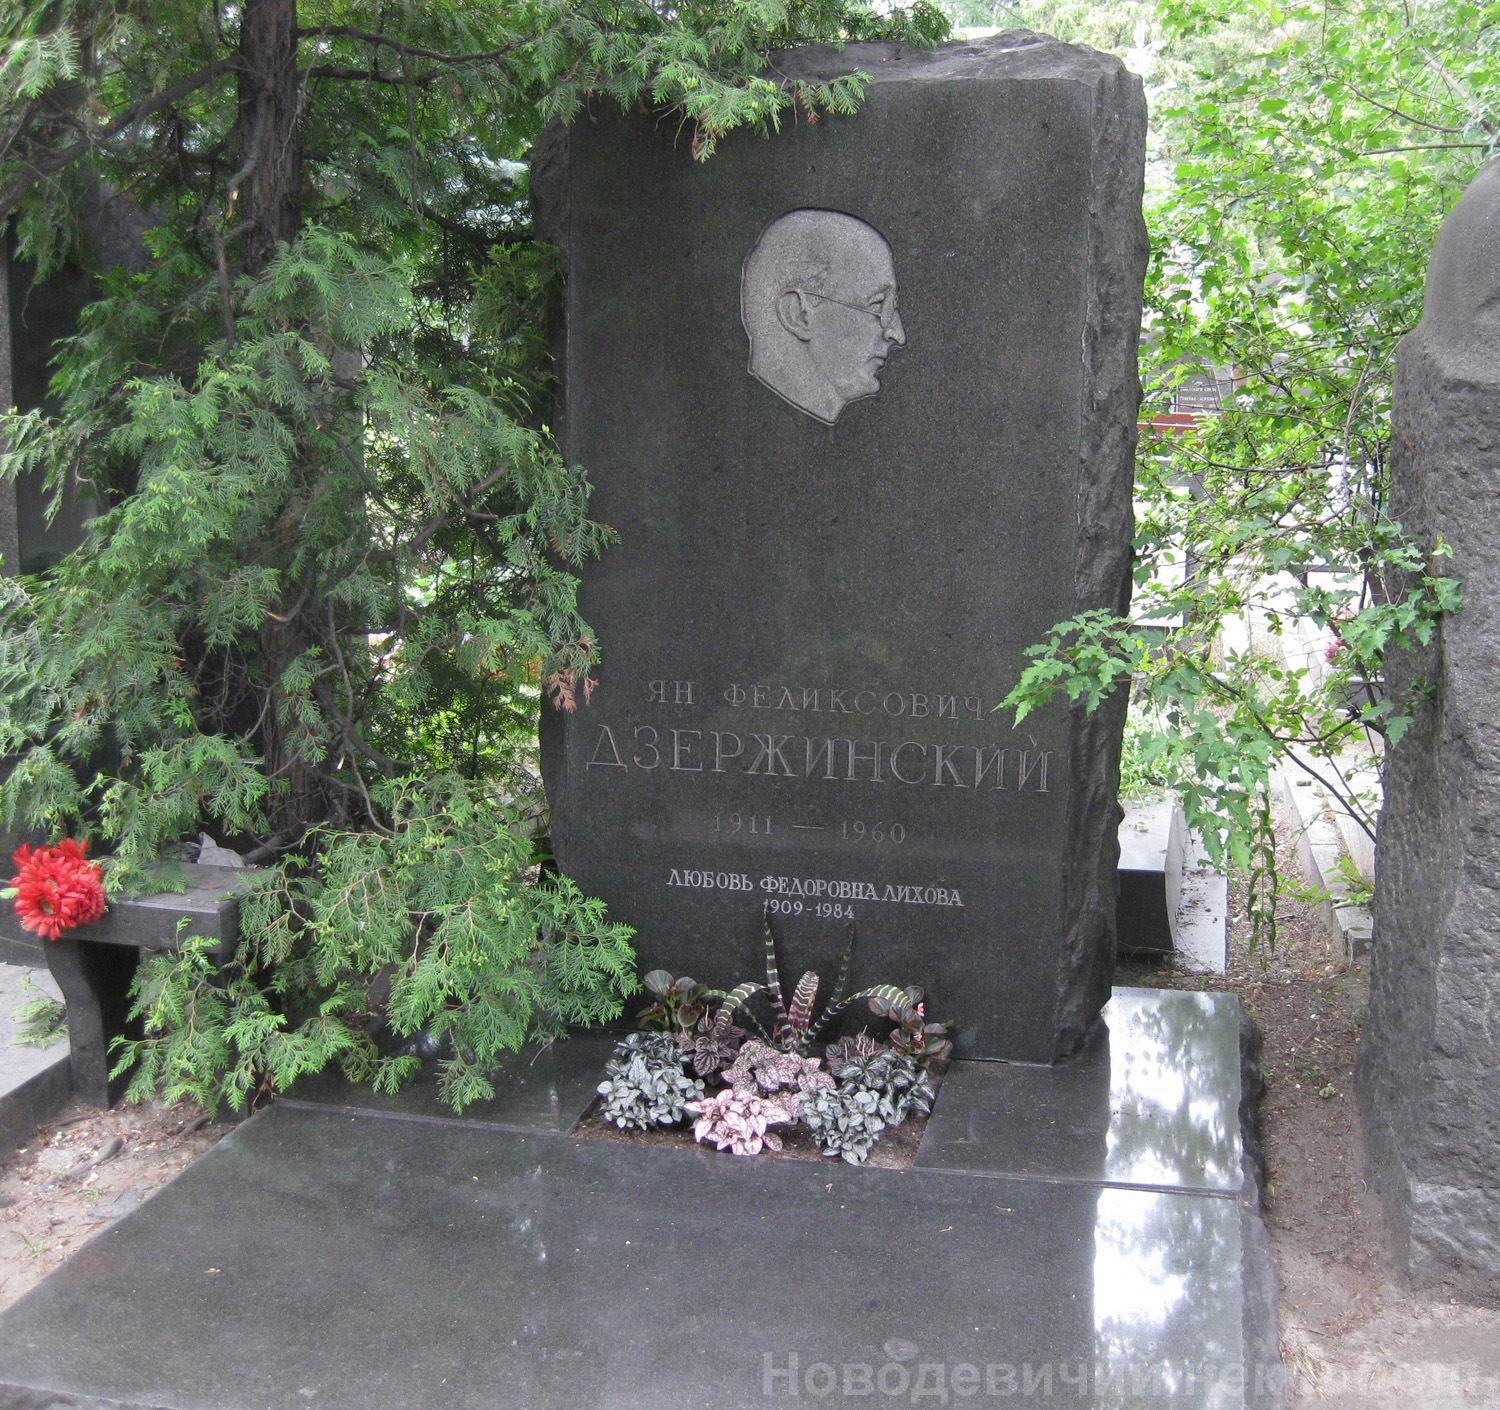 Памятник на могиле Дзержинского Я.Ф. (1911-1960), арх. Л.Лихова, на Новодевичьем кладбище (8-7-2).